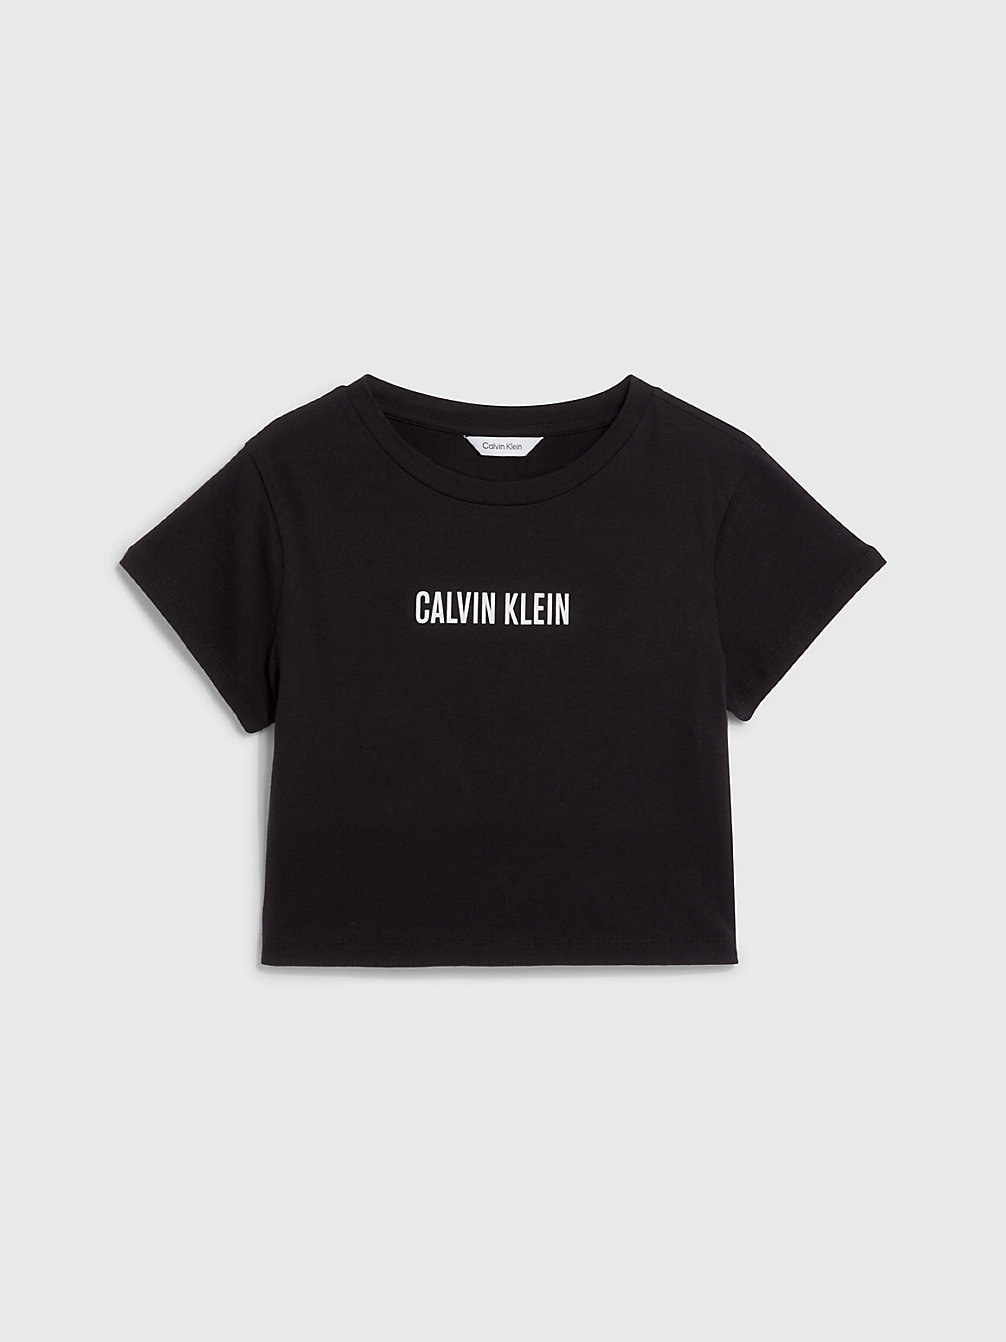 PVH BLACK Cropped Strand-T-Shirt Voor Meisjes - Intense Power undefined girls Calvin Klein